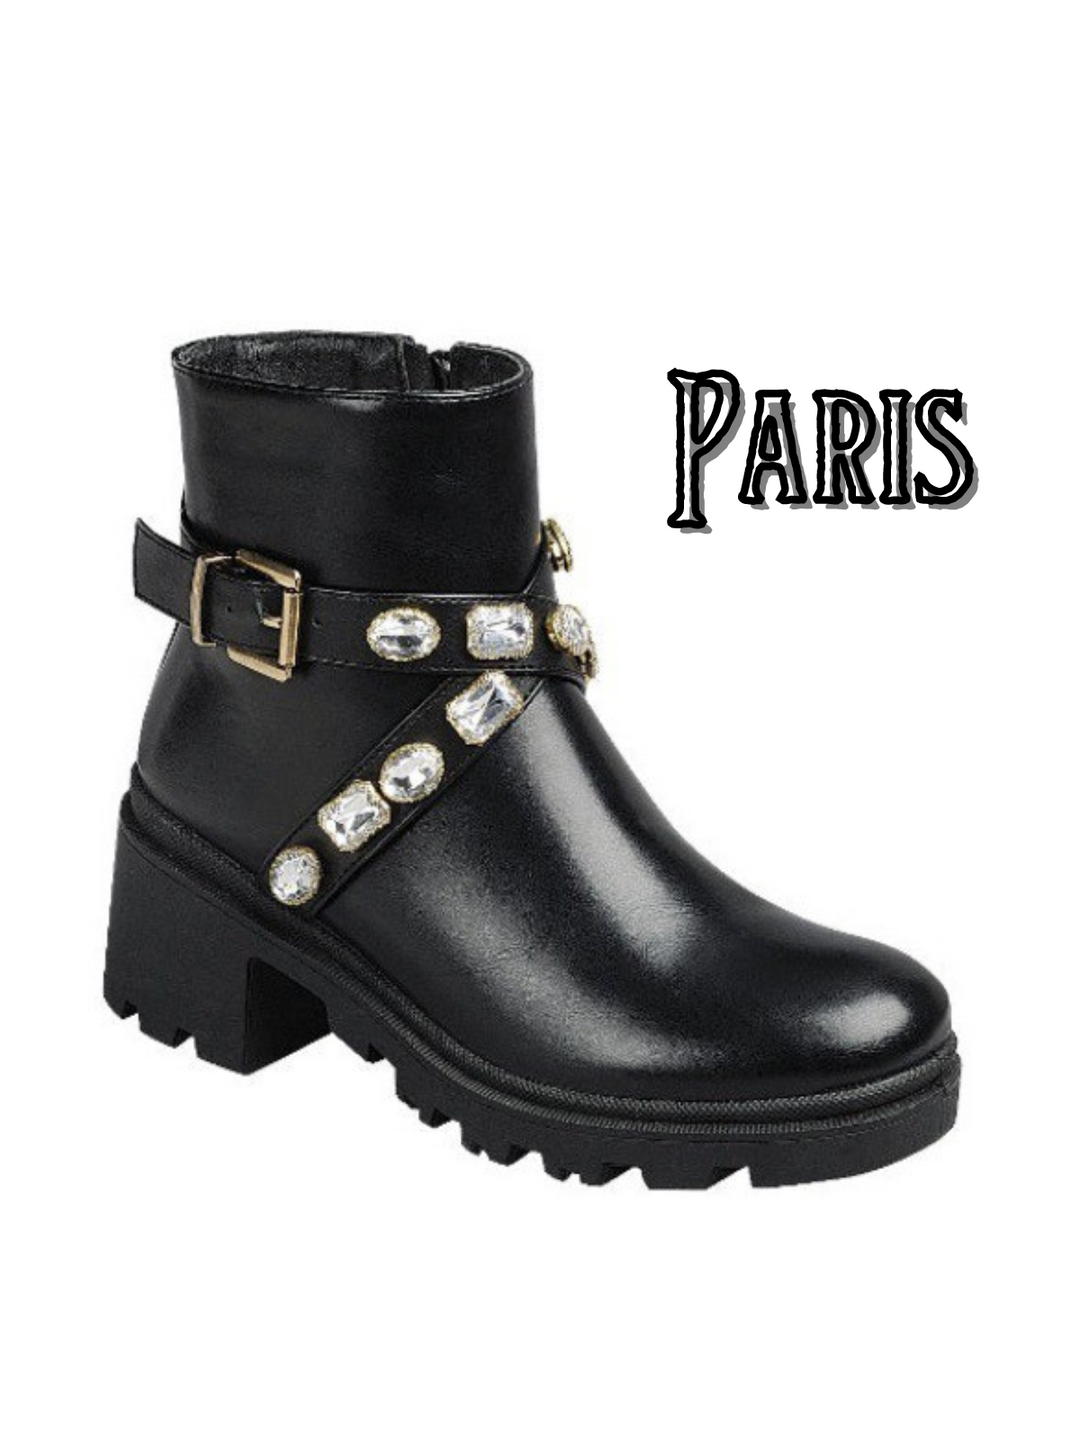 Paris Boots-Black | Doorbuster